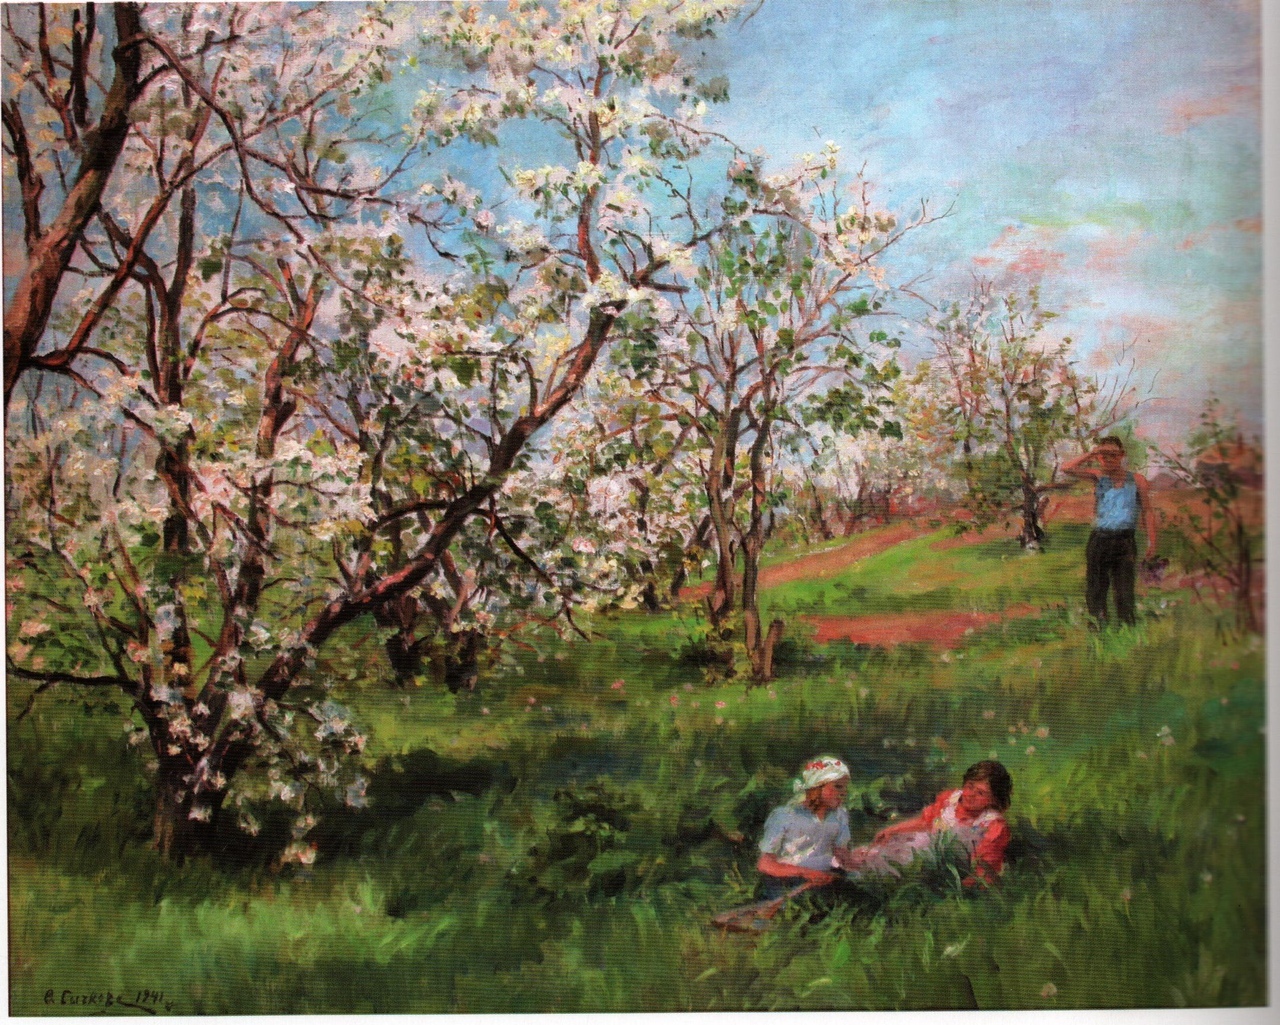 Описание картины цветущие яблони - 94 фото